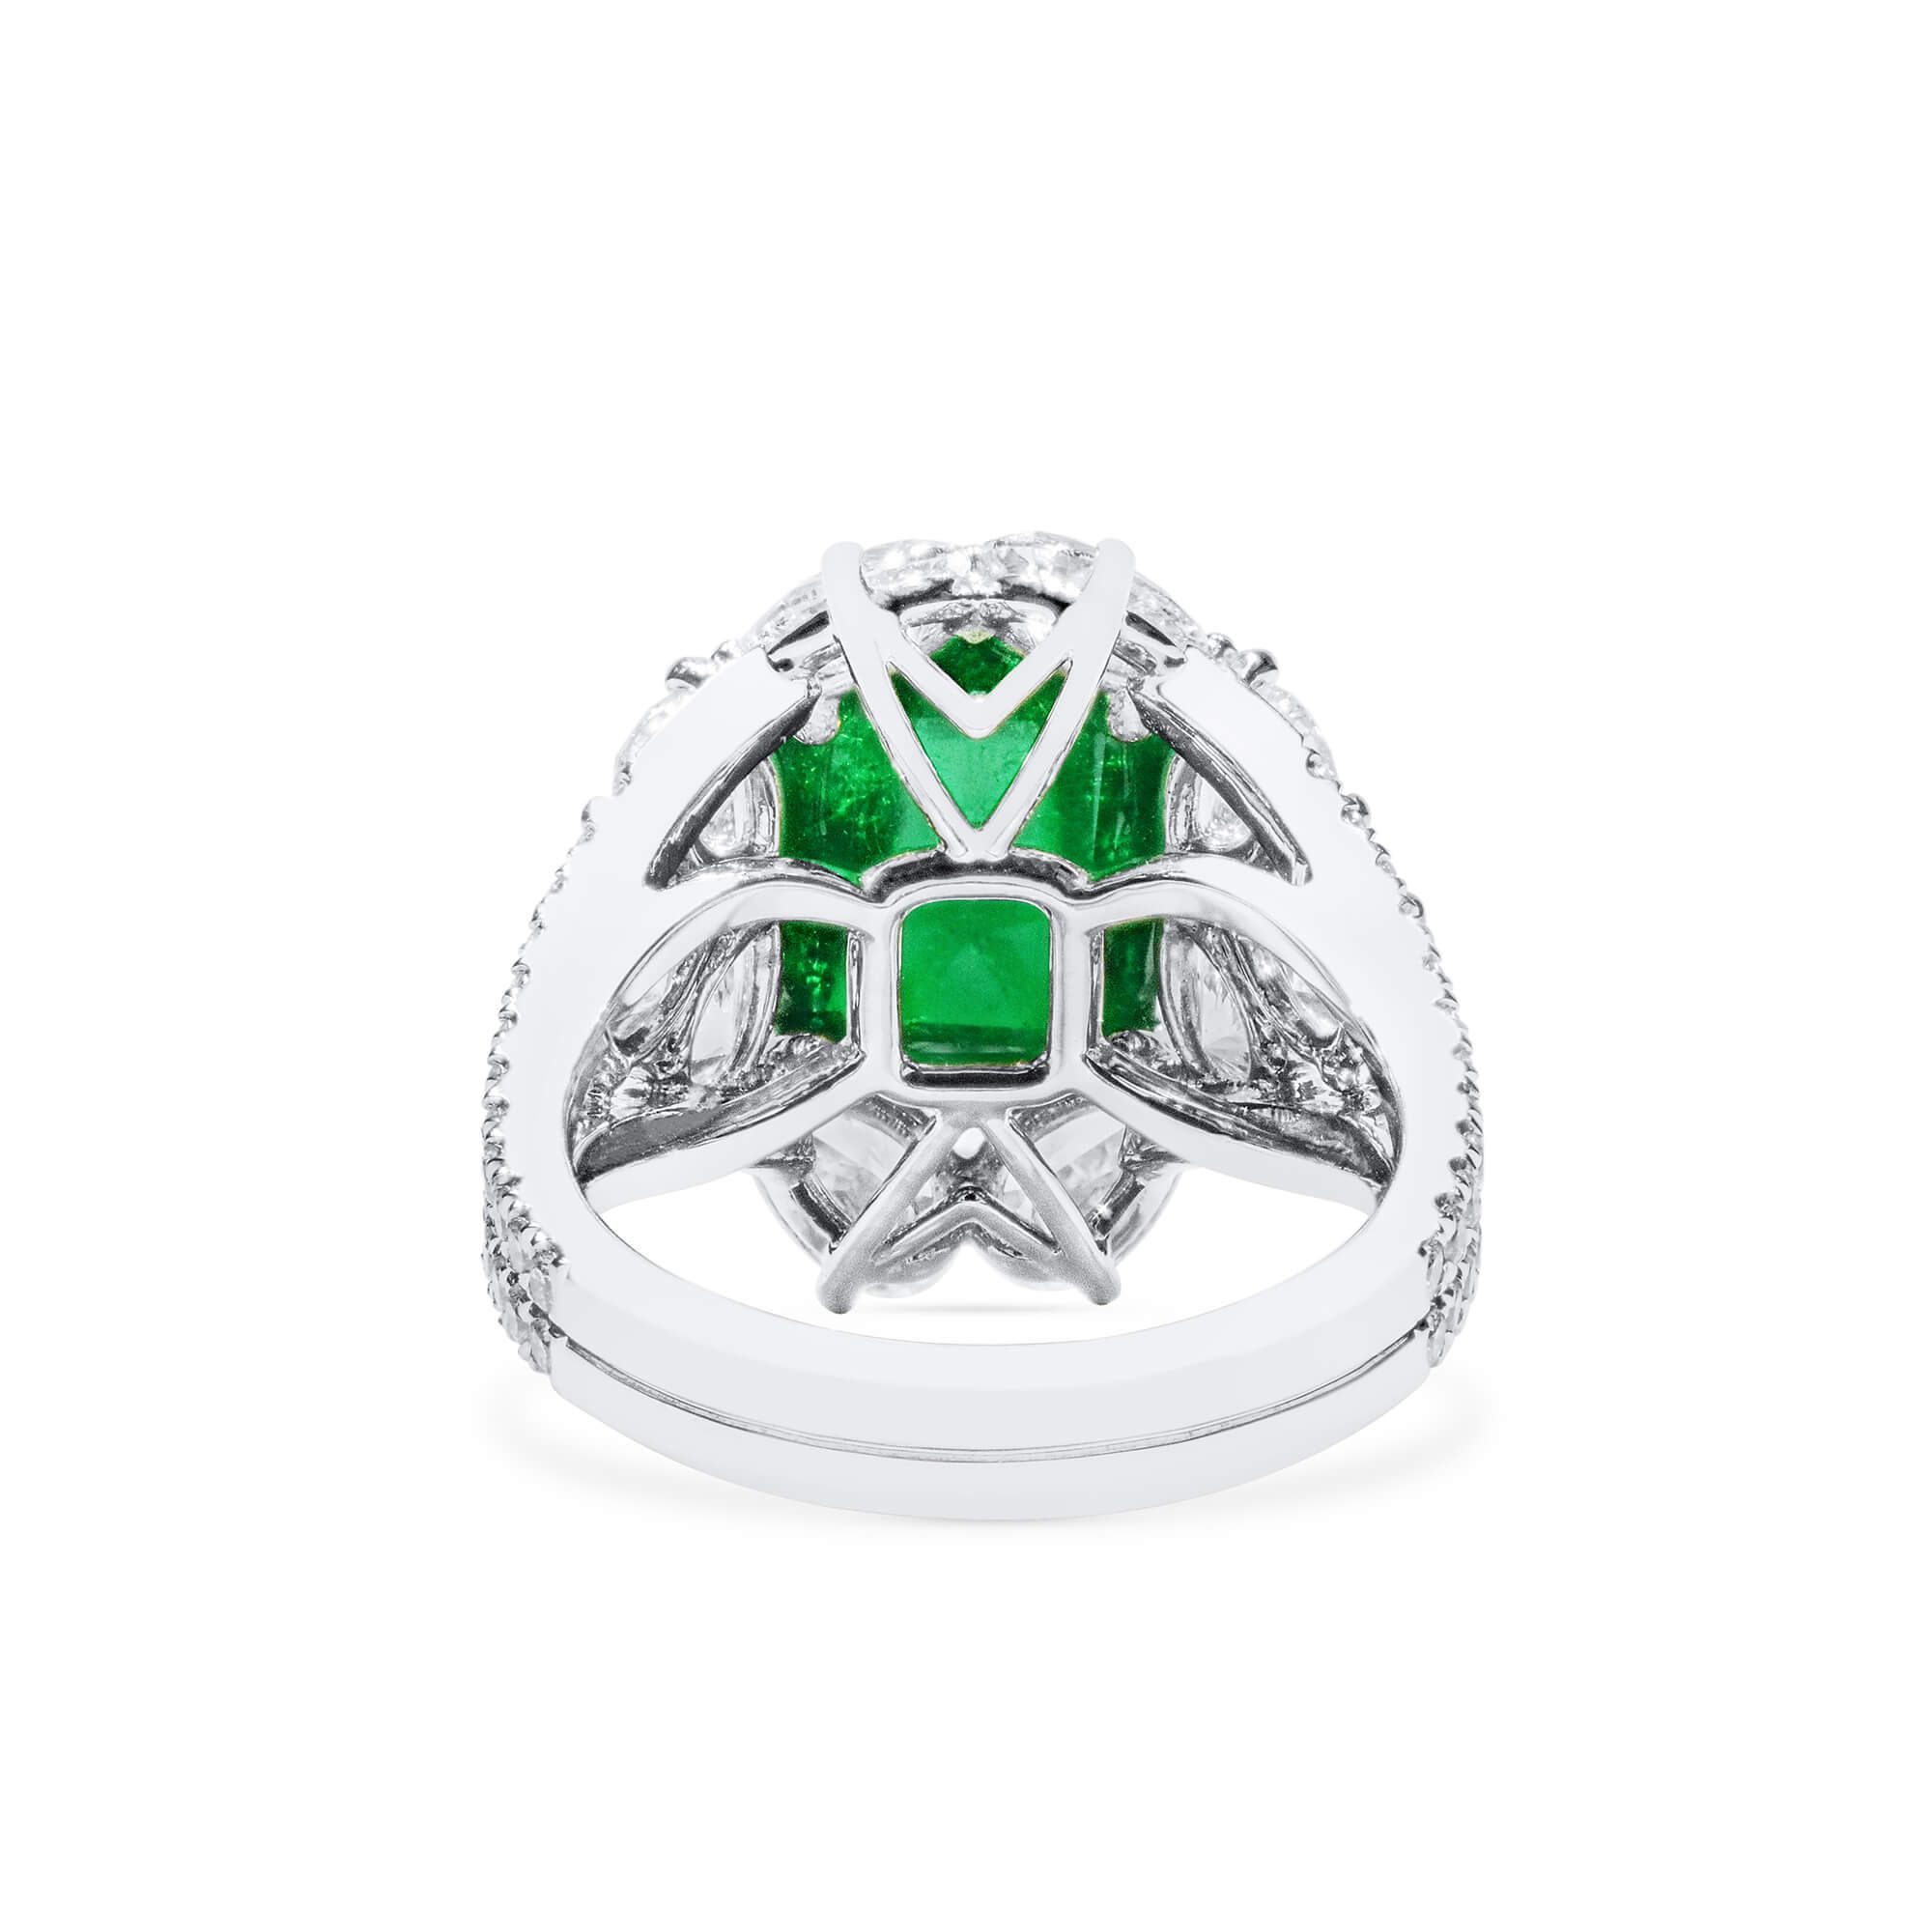 天然 Vivid Green 祖母绿型 戒指, 3.75 重量 (7.43 克拉 总重), GRS 认证, GRS2021-068656